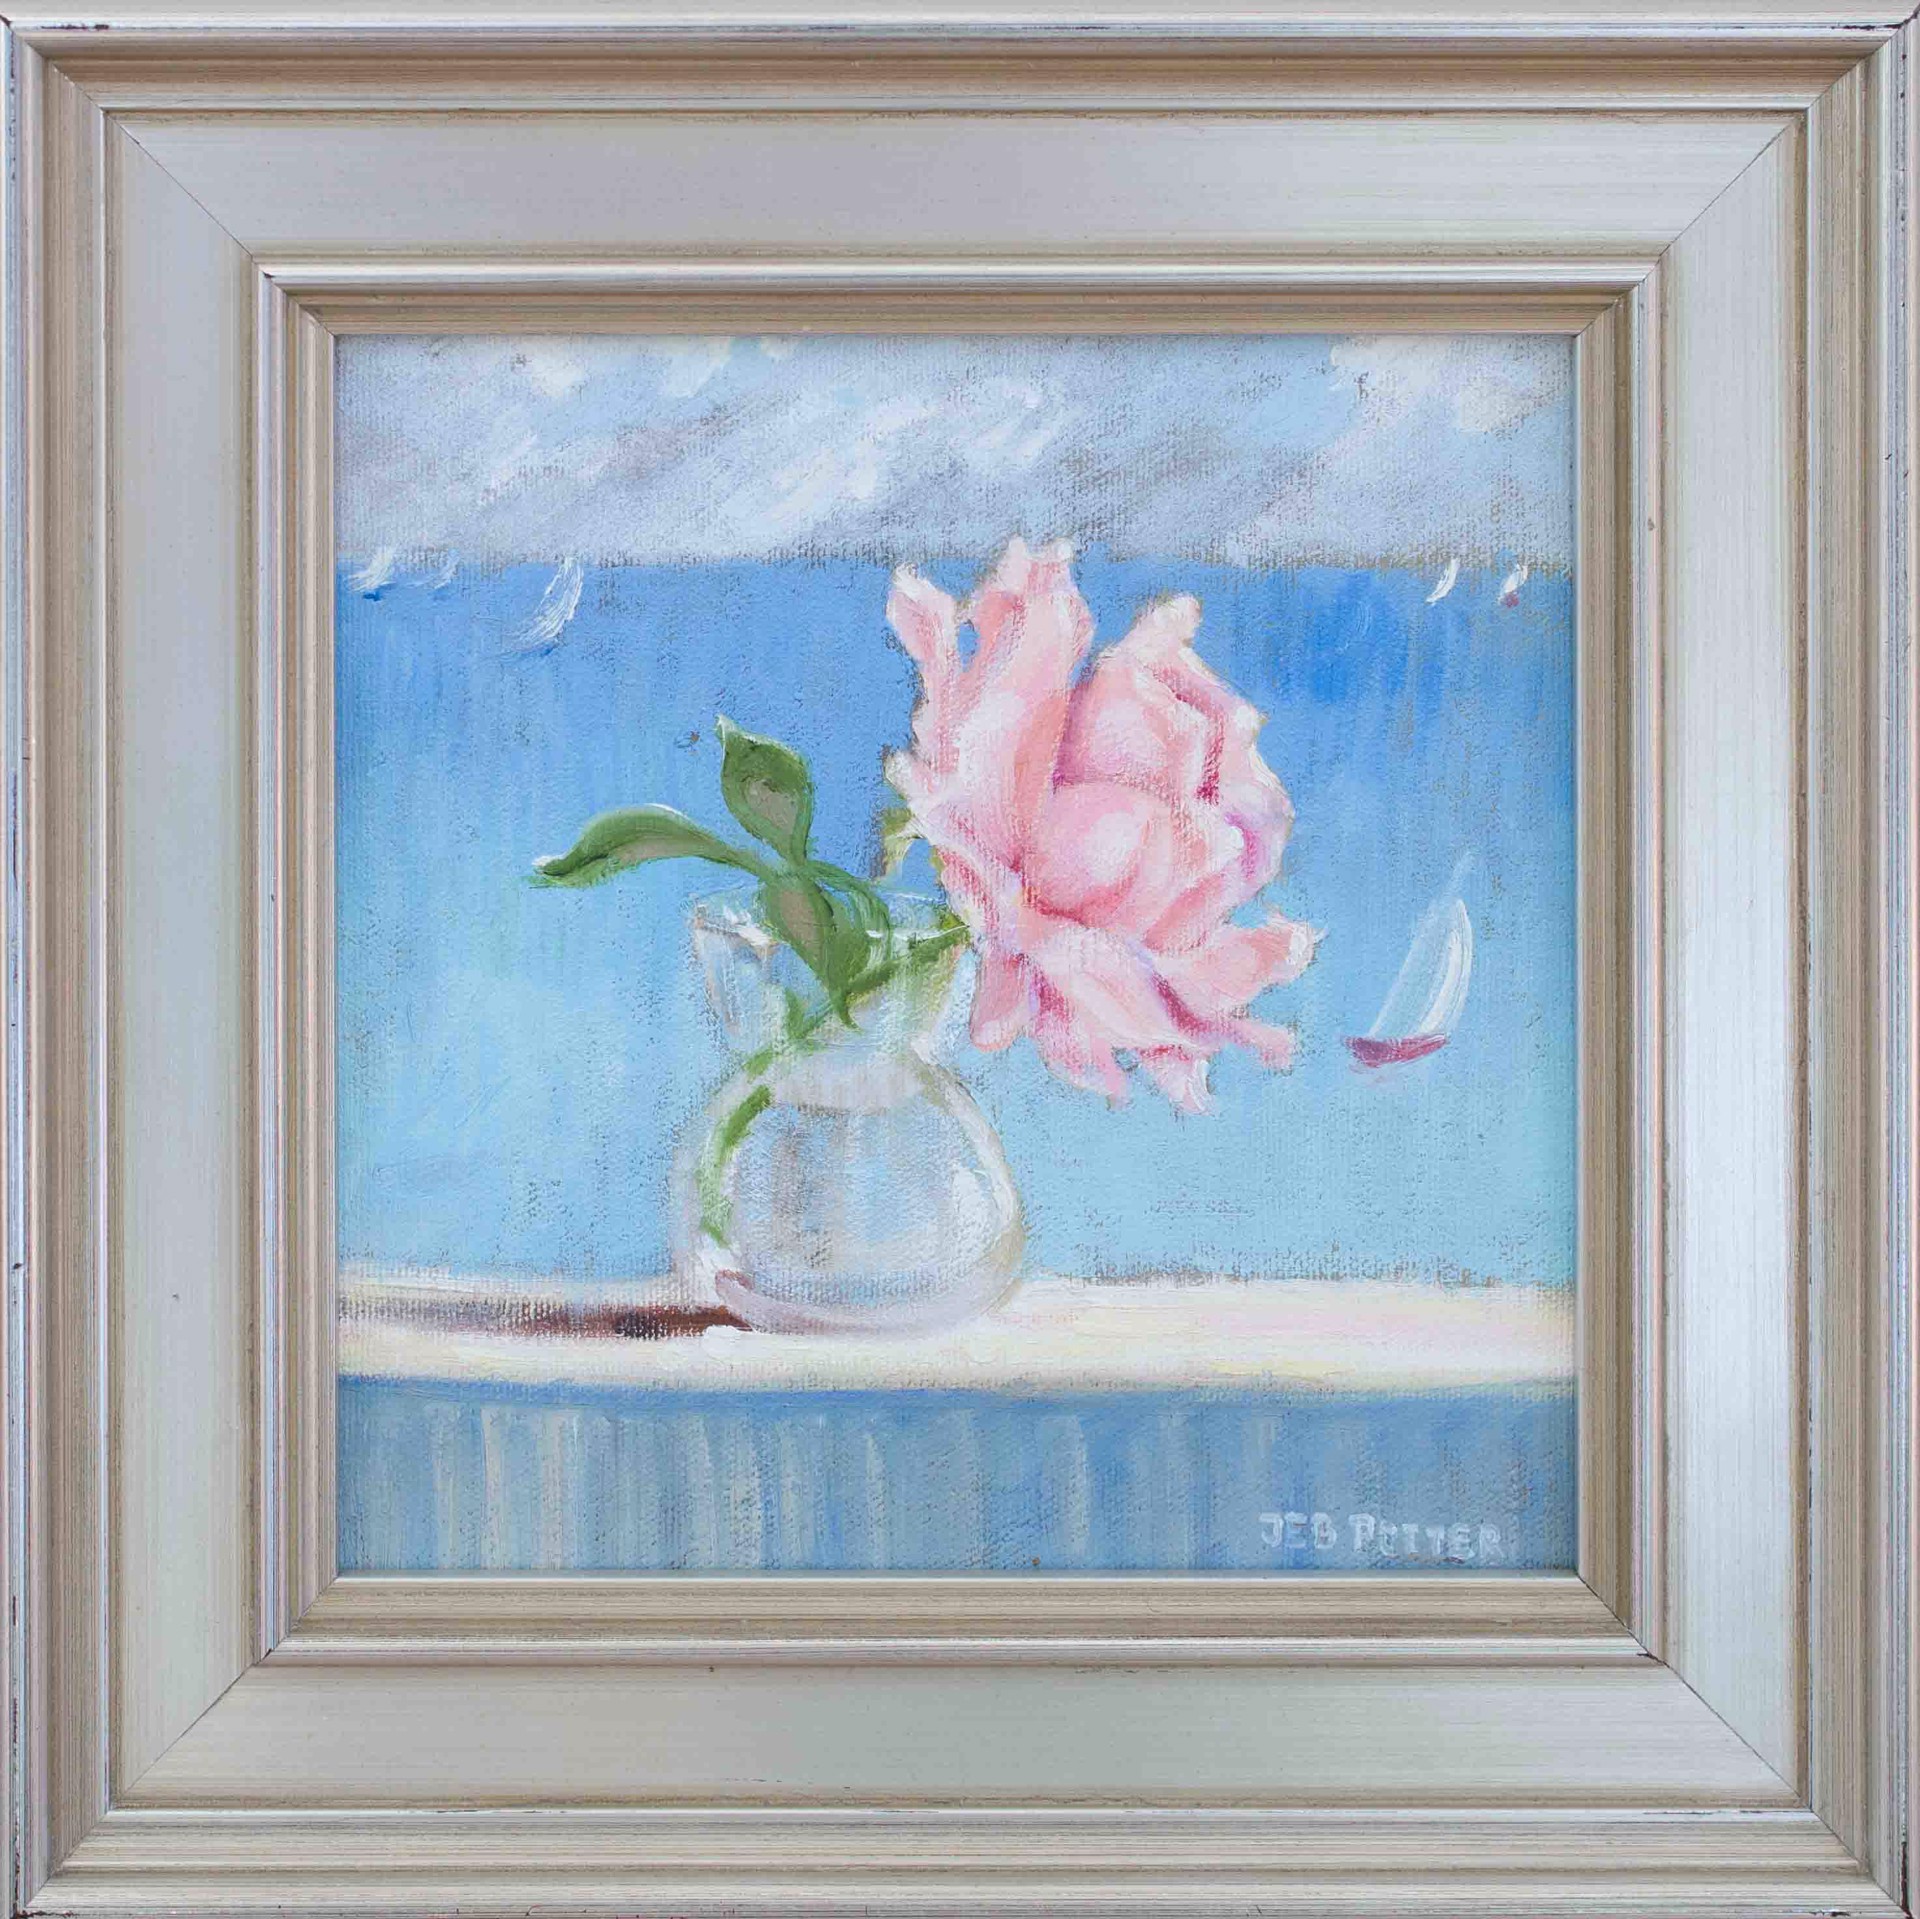 Seaside Rose - Pink by Jebby Potter